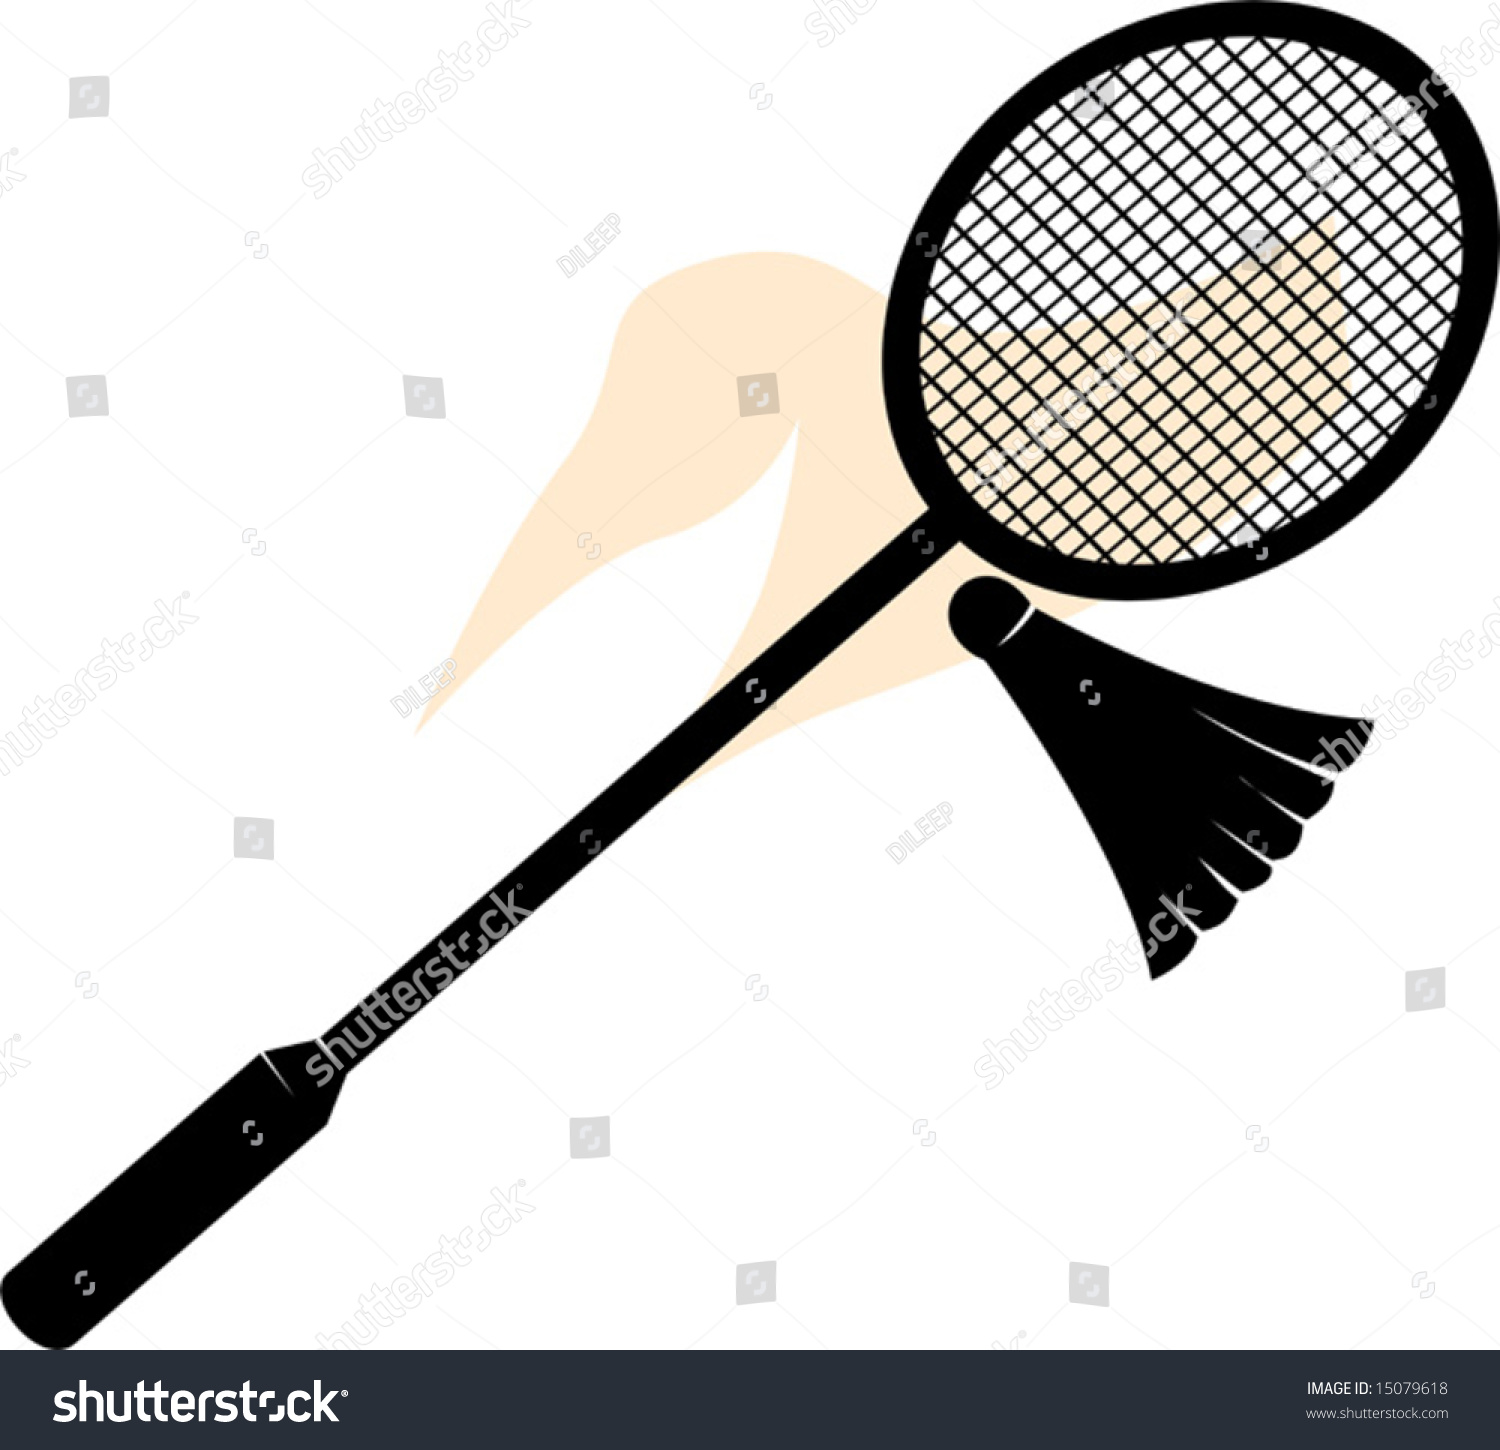 Shuttle Badminton Racket Birdie Stock Vector 15079618 ...